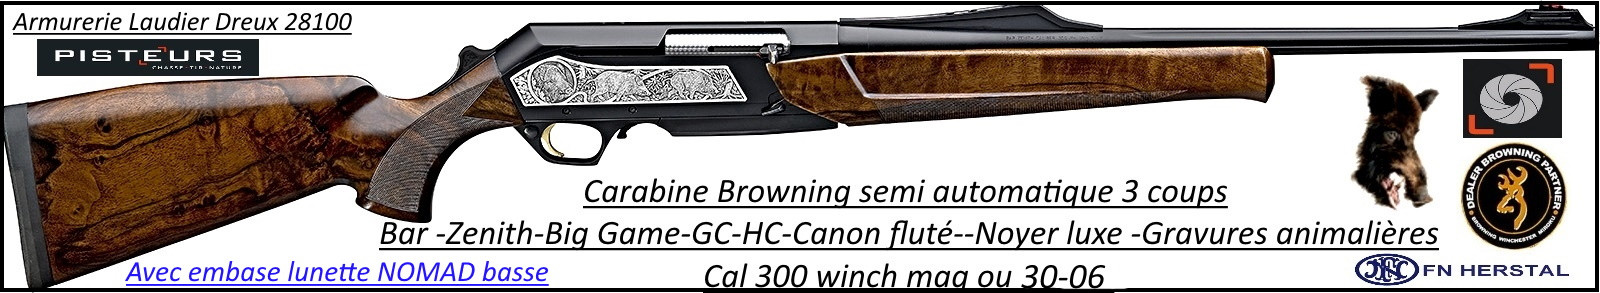 Browning Bar Zenith Big Game semi-automatique Prestige -GC-HC-Canon-fluté-Cal -300- winch-mag- ou-30 06 ou 9.3x62-Plaquettes-gravées-noyer -luxe+ embase lunette Nomad-Promotion